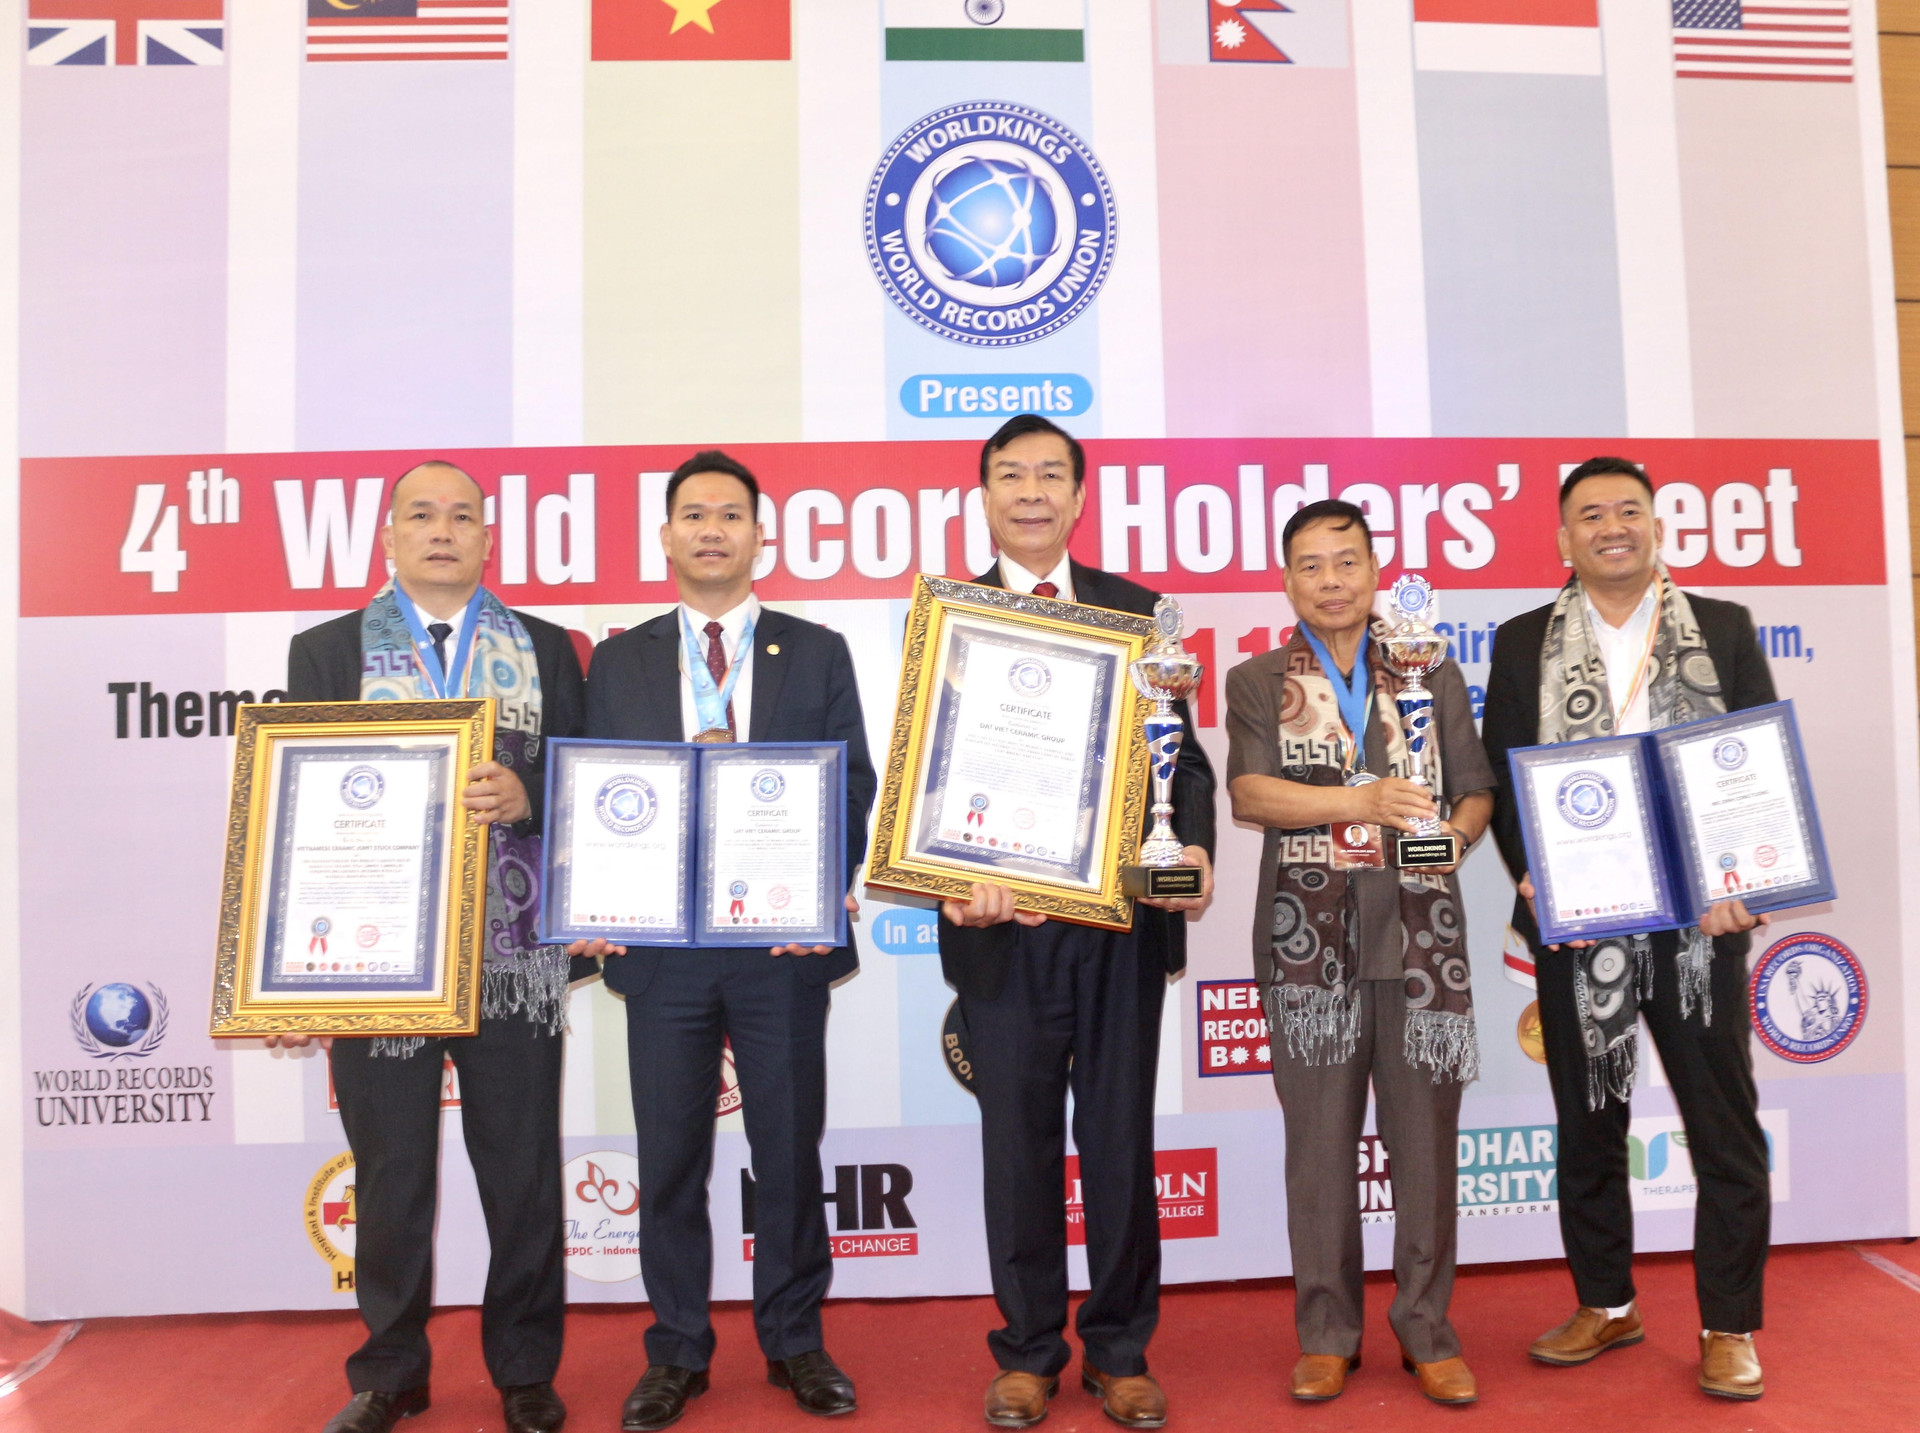 Anh hùng lao động Nguyễn Quang Mâu vinh dự đón nhận danh hiệu Giáo sư danh dự của Viện Đại học Kỷ lục Thế giới.